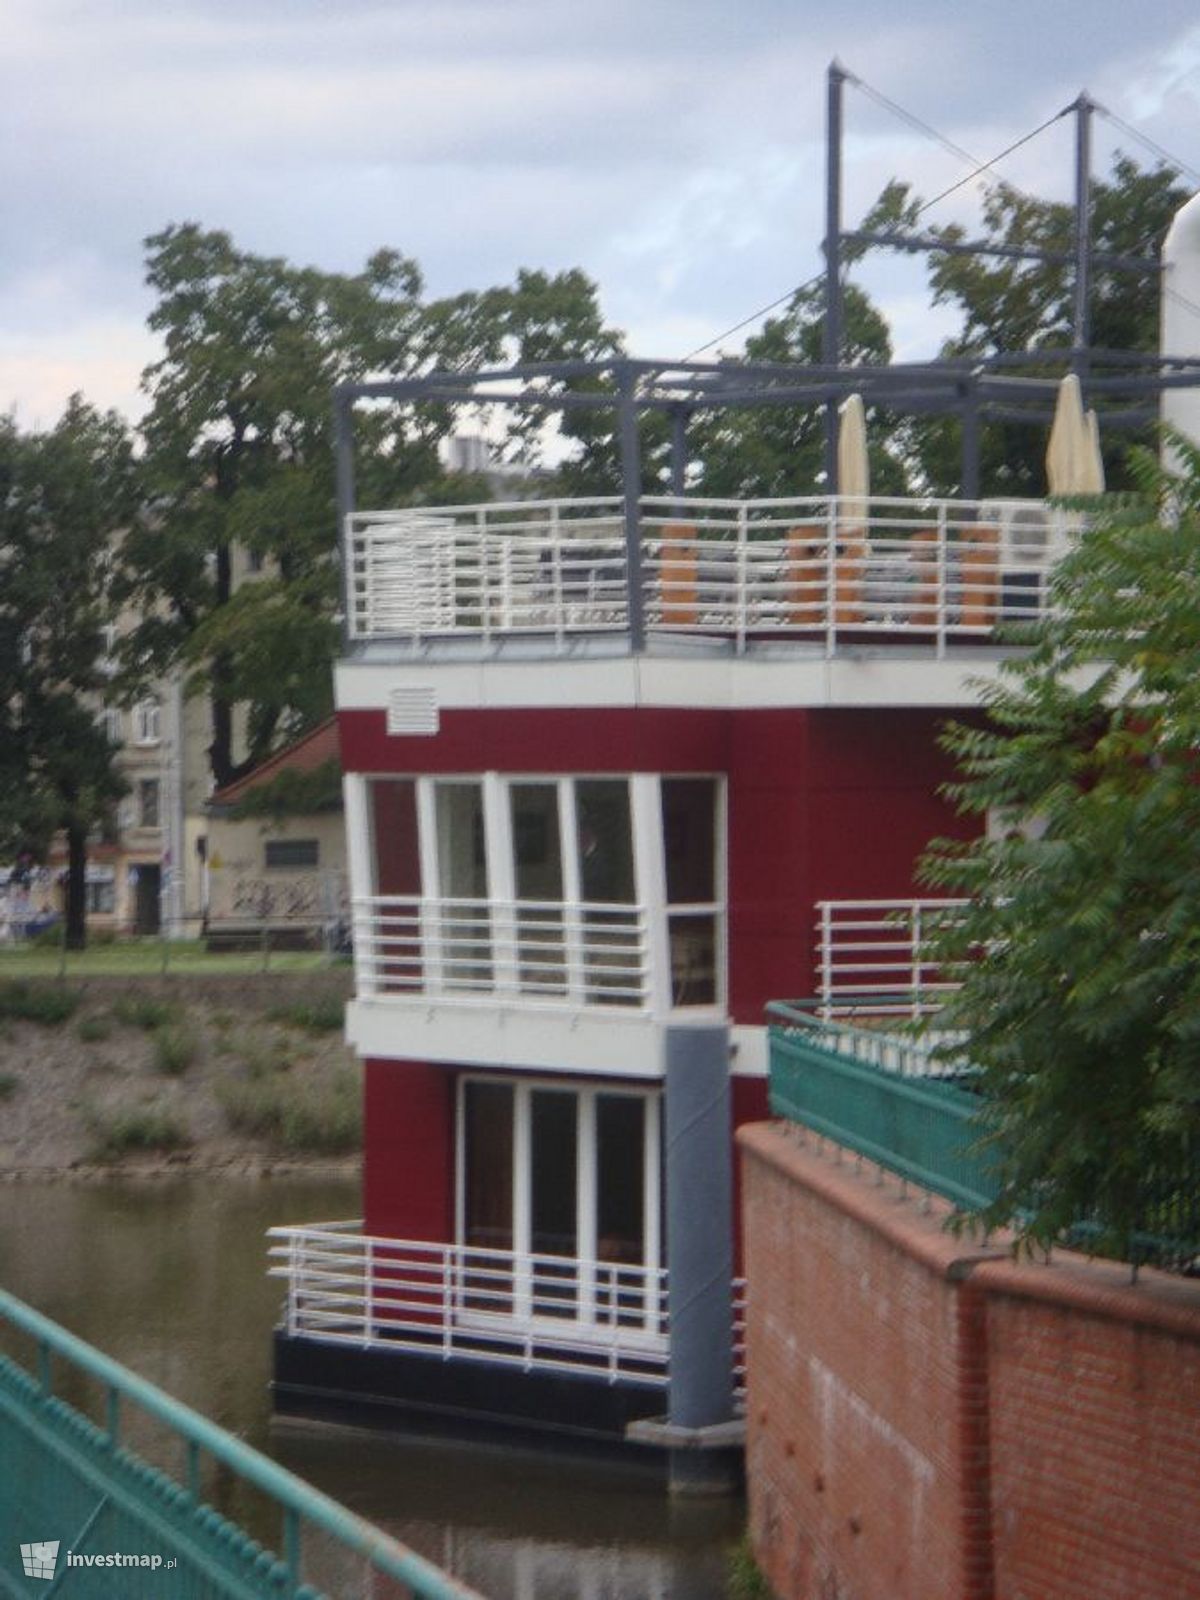 Zdjęcie [Wrocław] Restauracja "Barka Tumska" przy hotelu "Tumski" fot. Jan Augustynowski